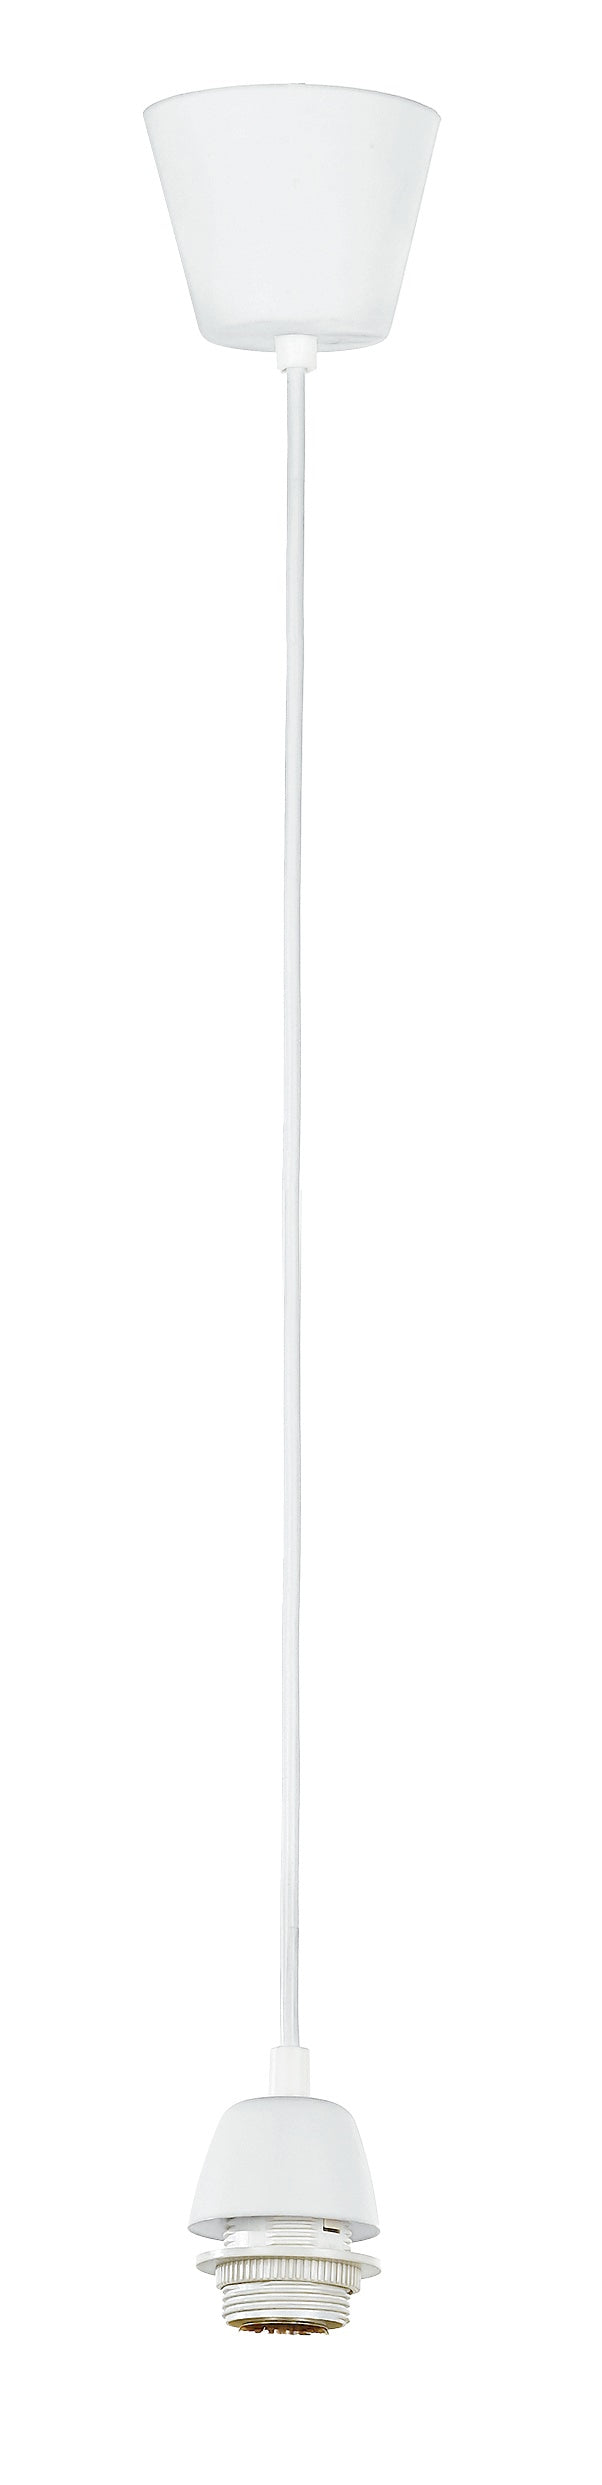 Pendel Bianco Plastica E27 9.5X80Cm